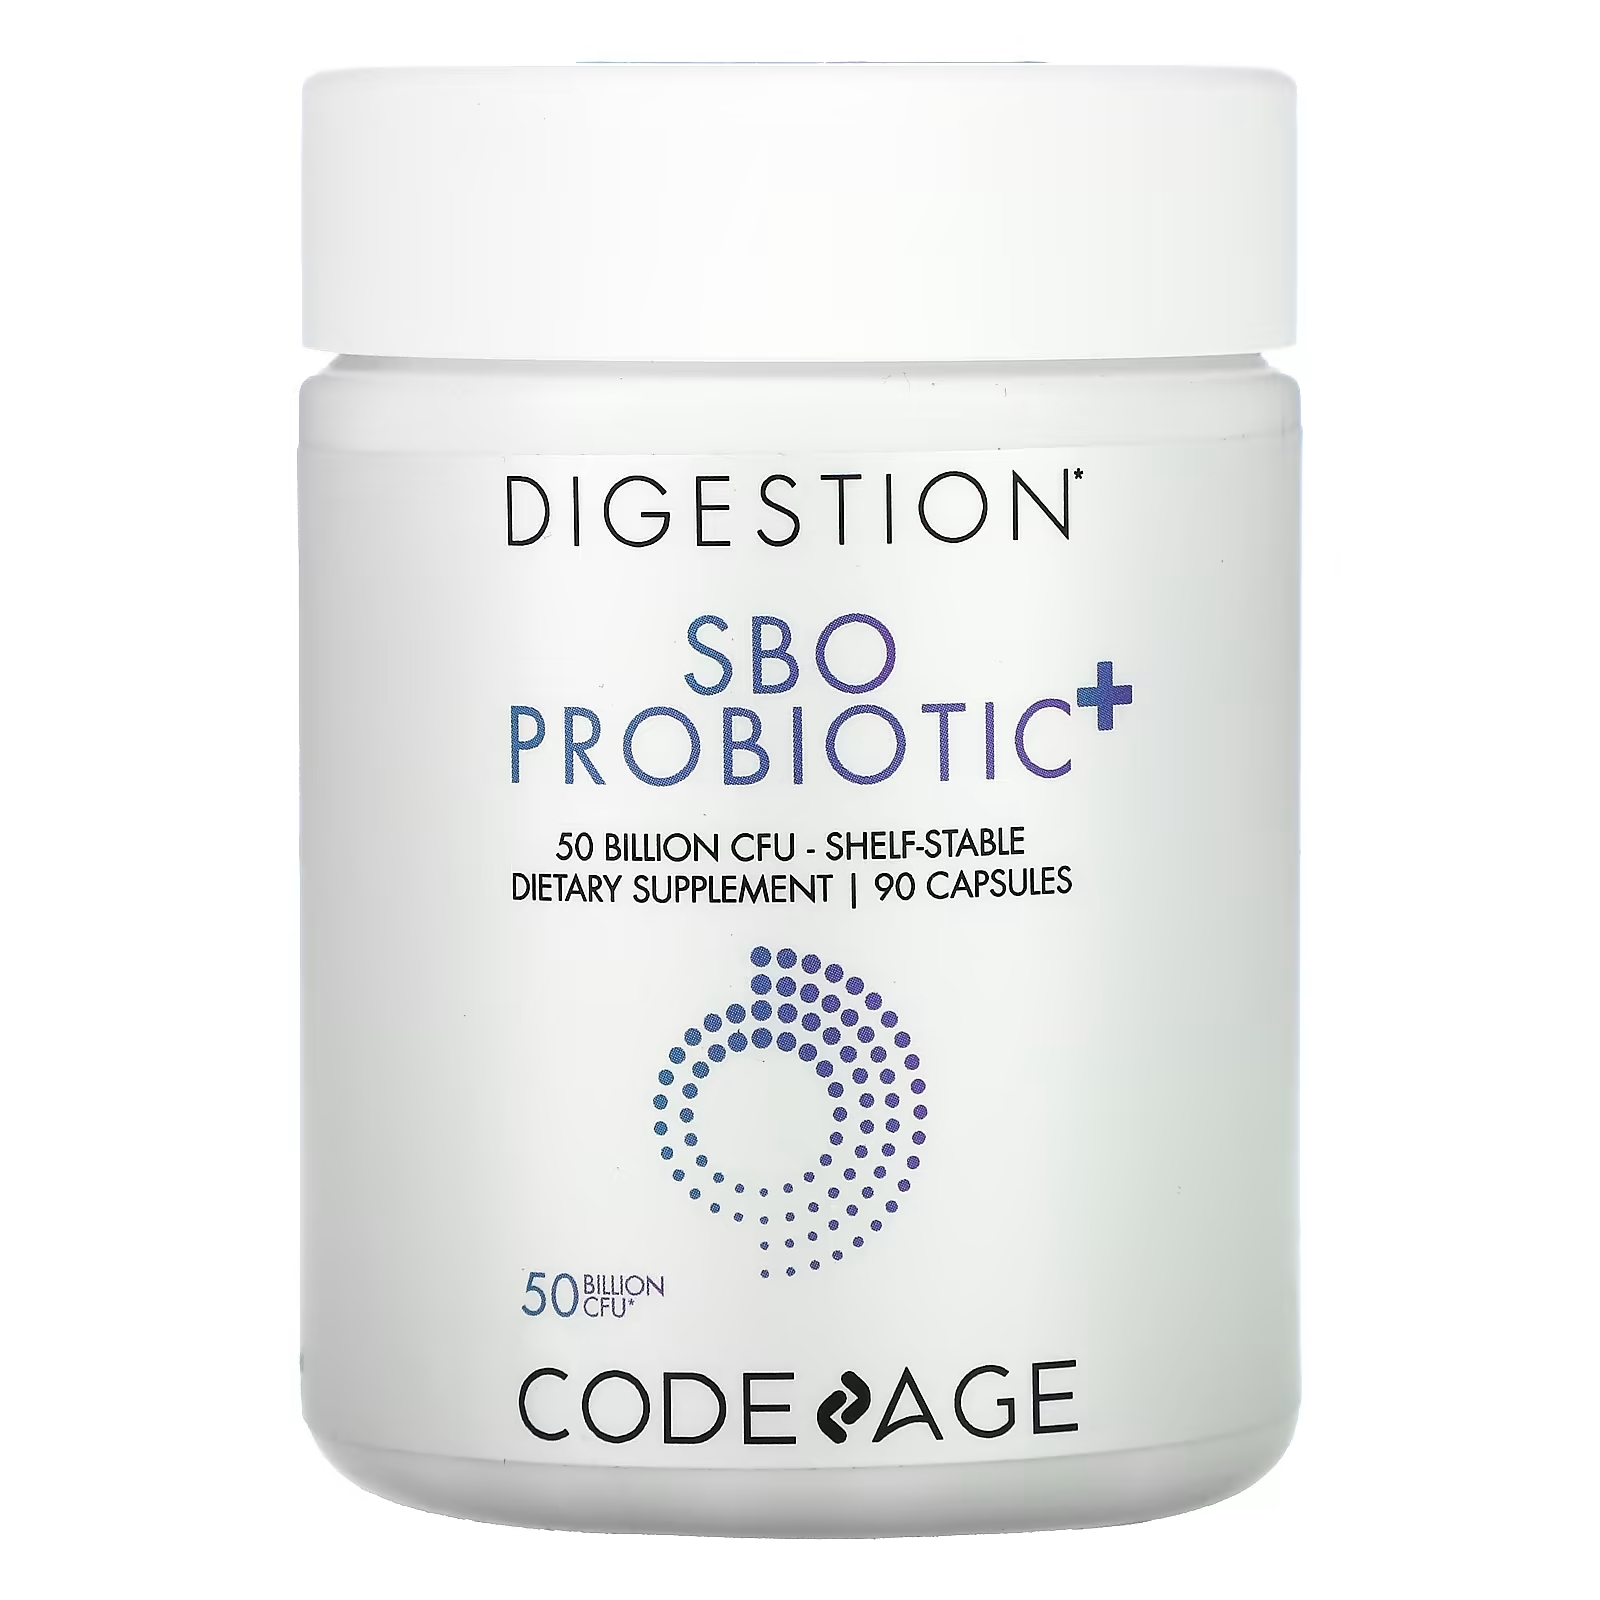 Codeage Для пищеварения пробиотик SBO + длительного хранения 50 млрд КОЕ, 90 капсул codeage пробиотик для кожи длительного хранения 50 млрд кое 60 капсул